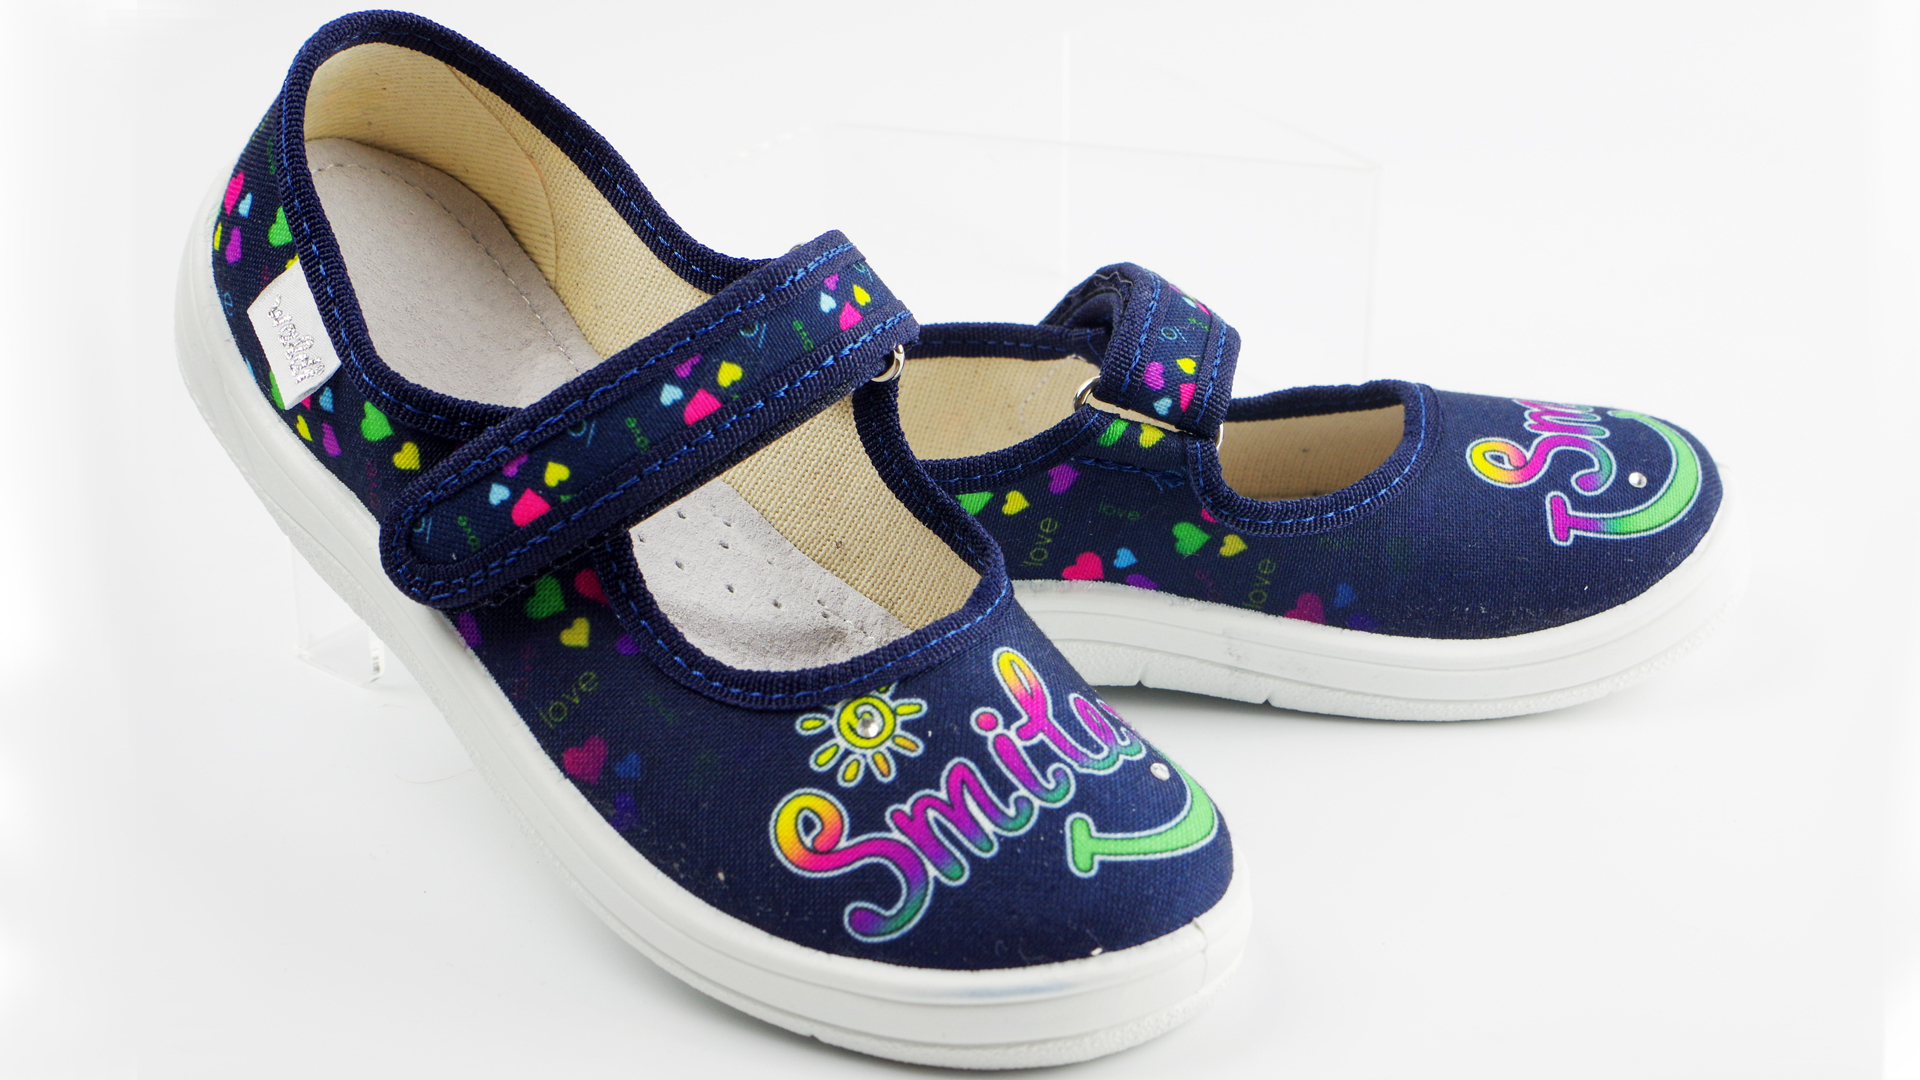 Текстильная обувь для девочек Тапочки Smile (2170) цвет Синий 24-30 размеры – Sole Kids. Фото 3